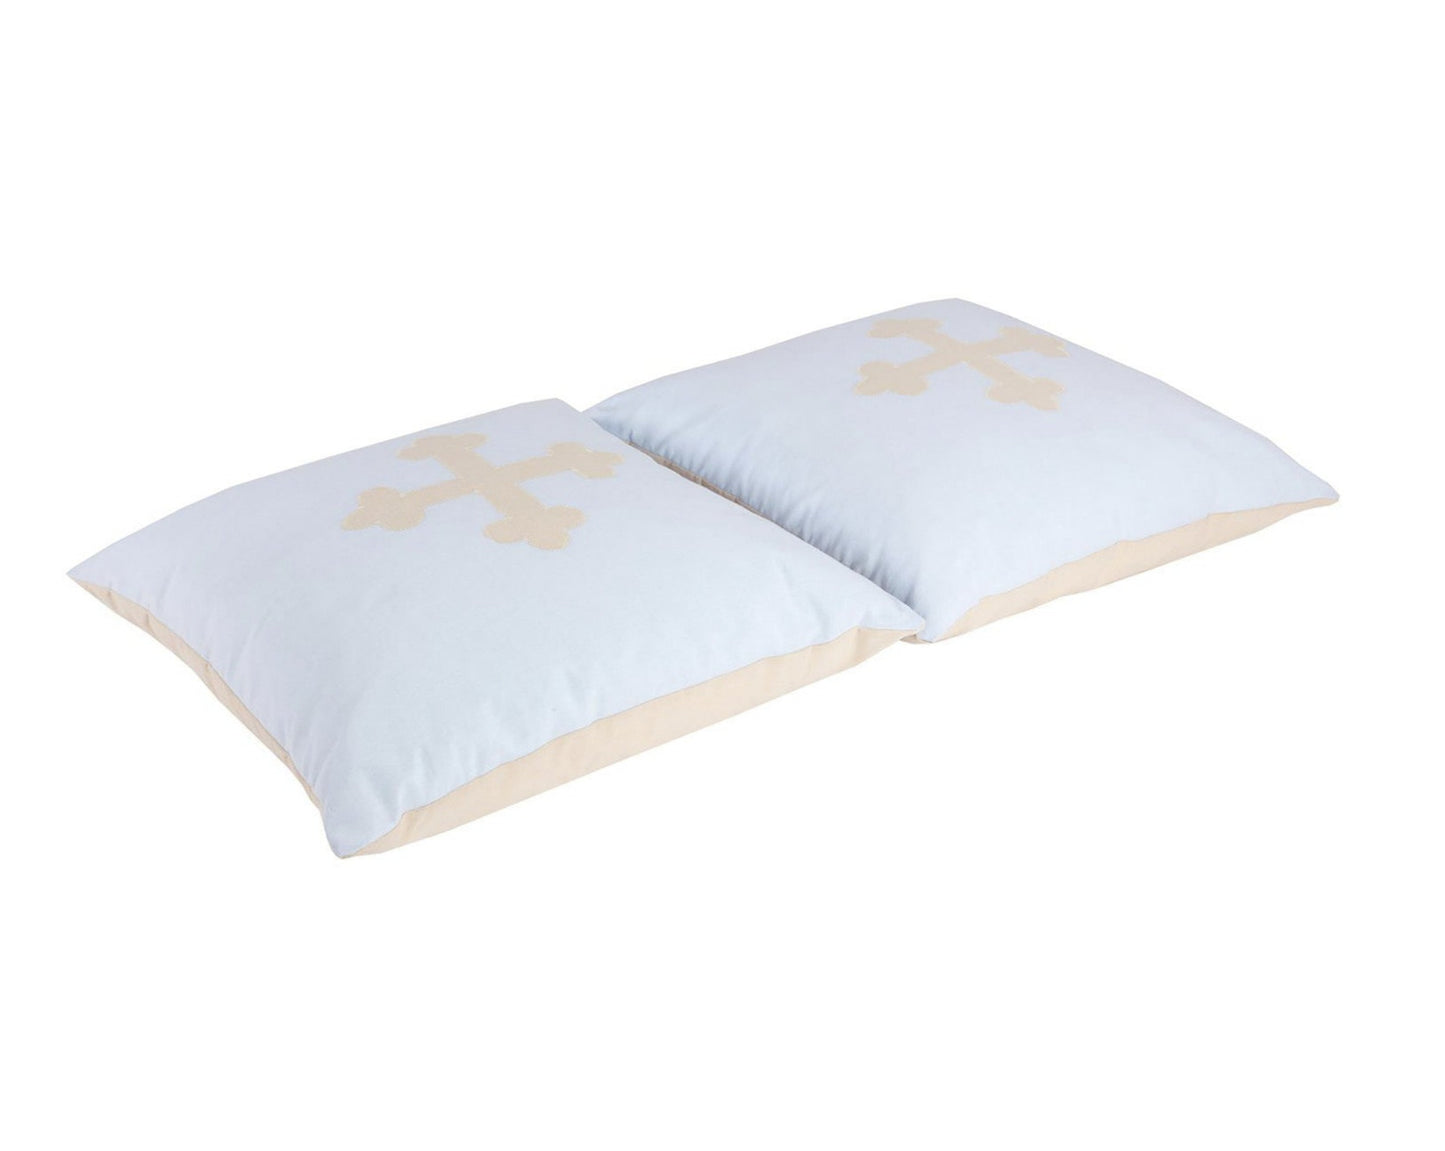 Fairytale Knight - Cushion set - 2 pillows - 50x50 cm